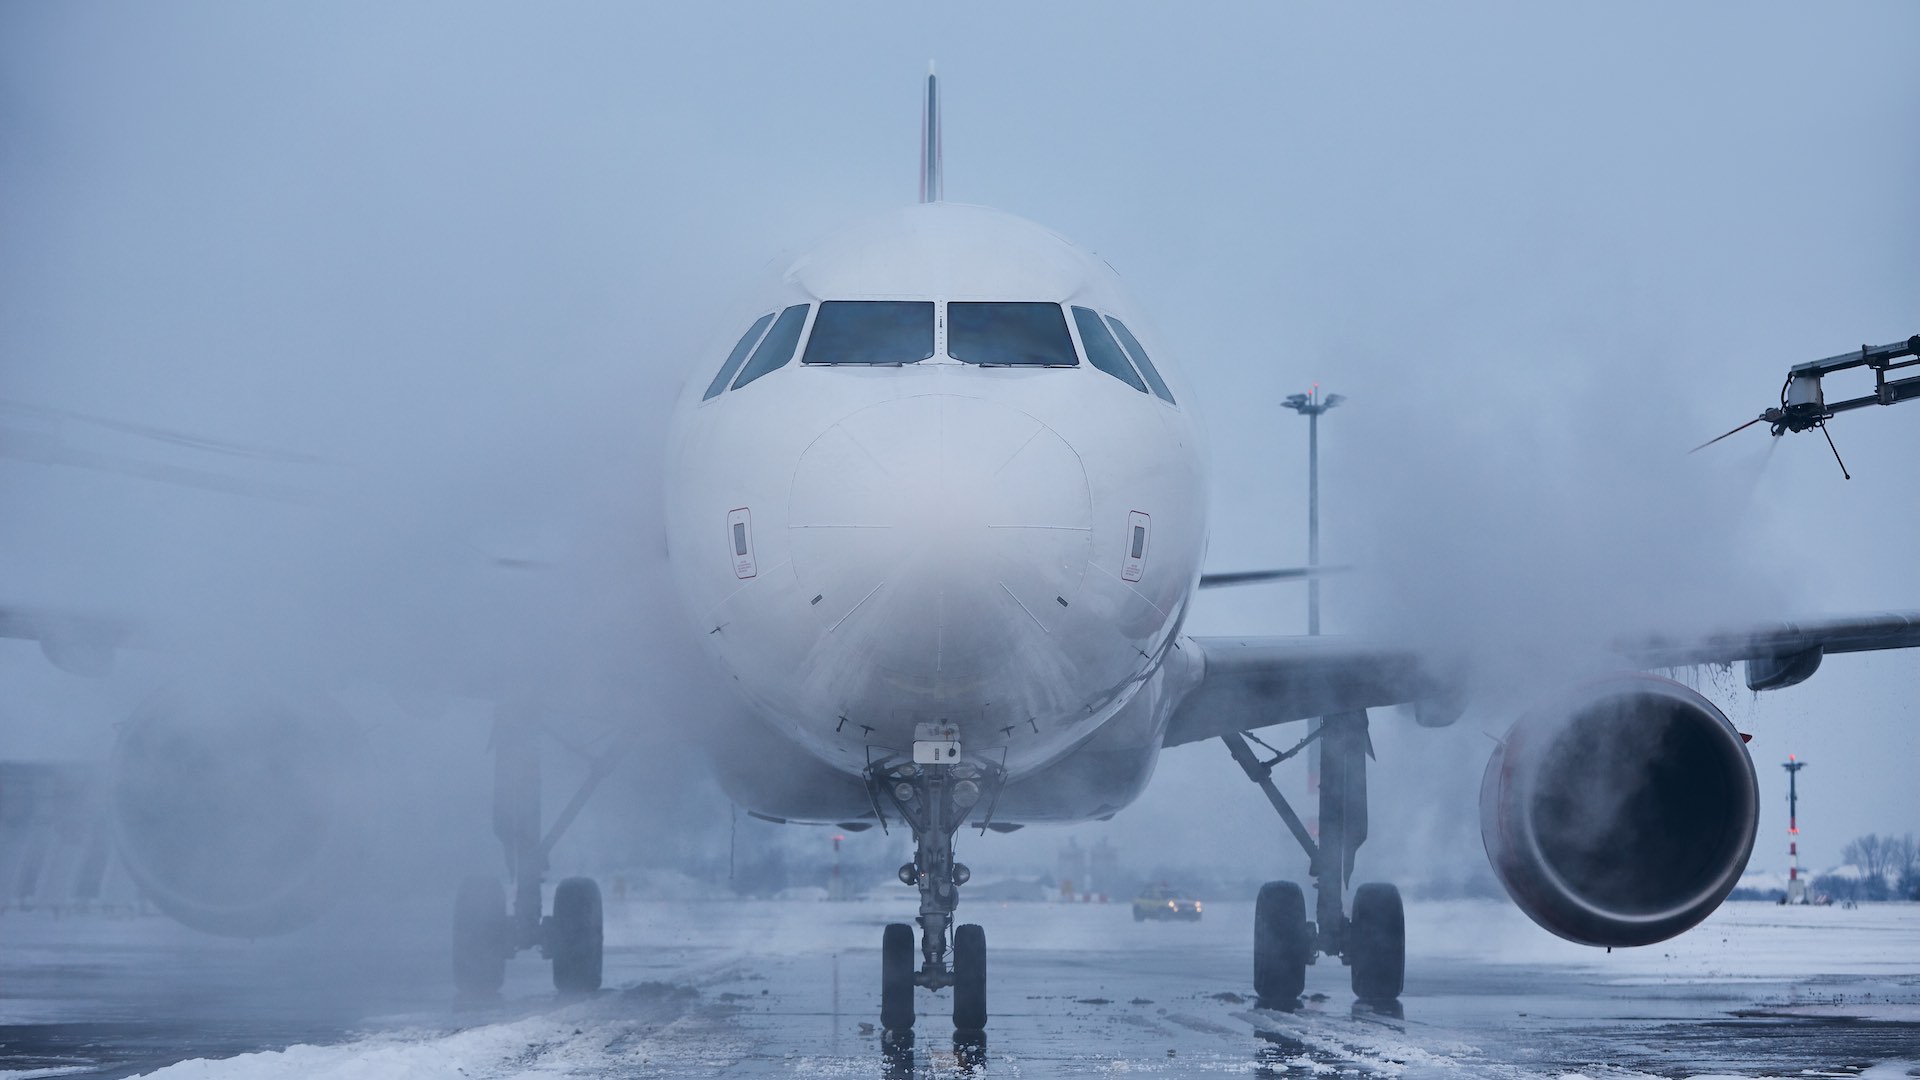 بارش سنگین برف منجر به لغو انبوه فرودگاه فرانکفورت شد